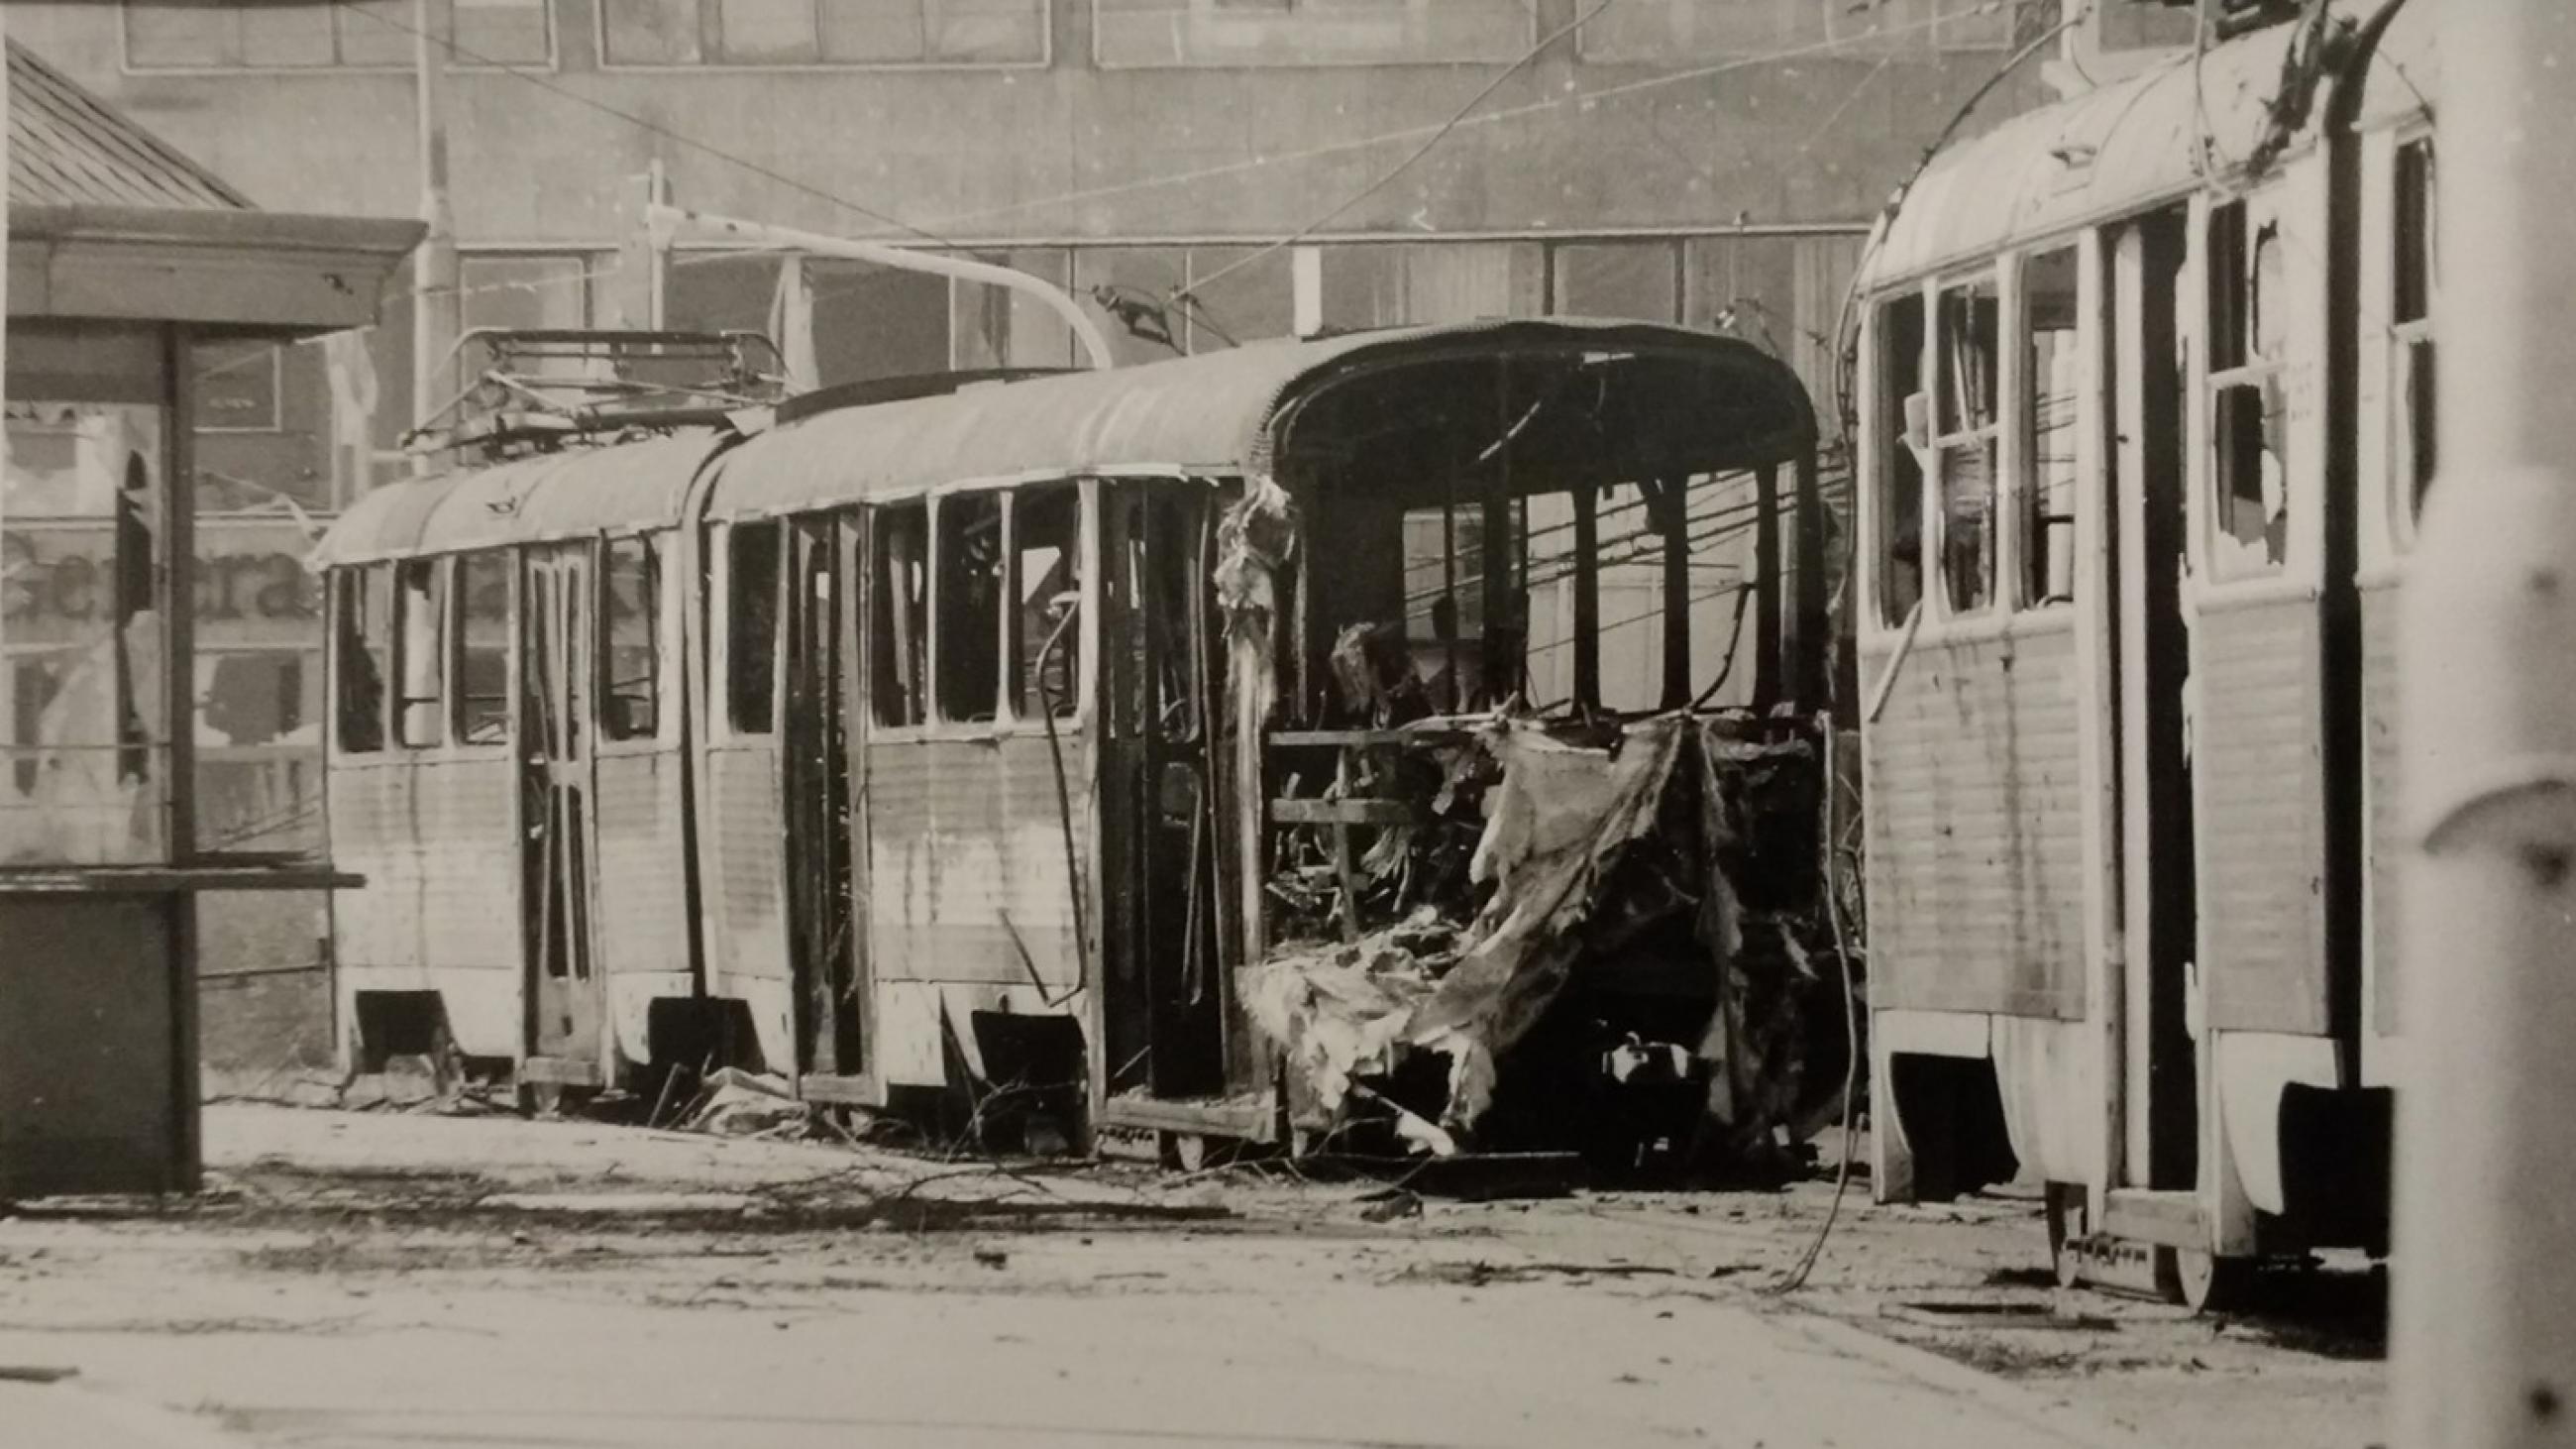 Black & white image of shelled trams in Sarajevo, Bosnia and Herzegovina, in 1992